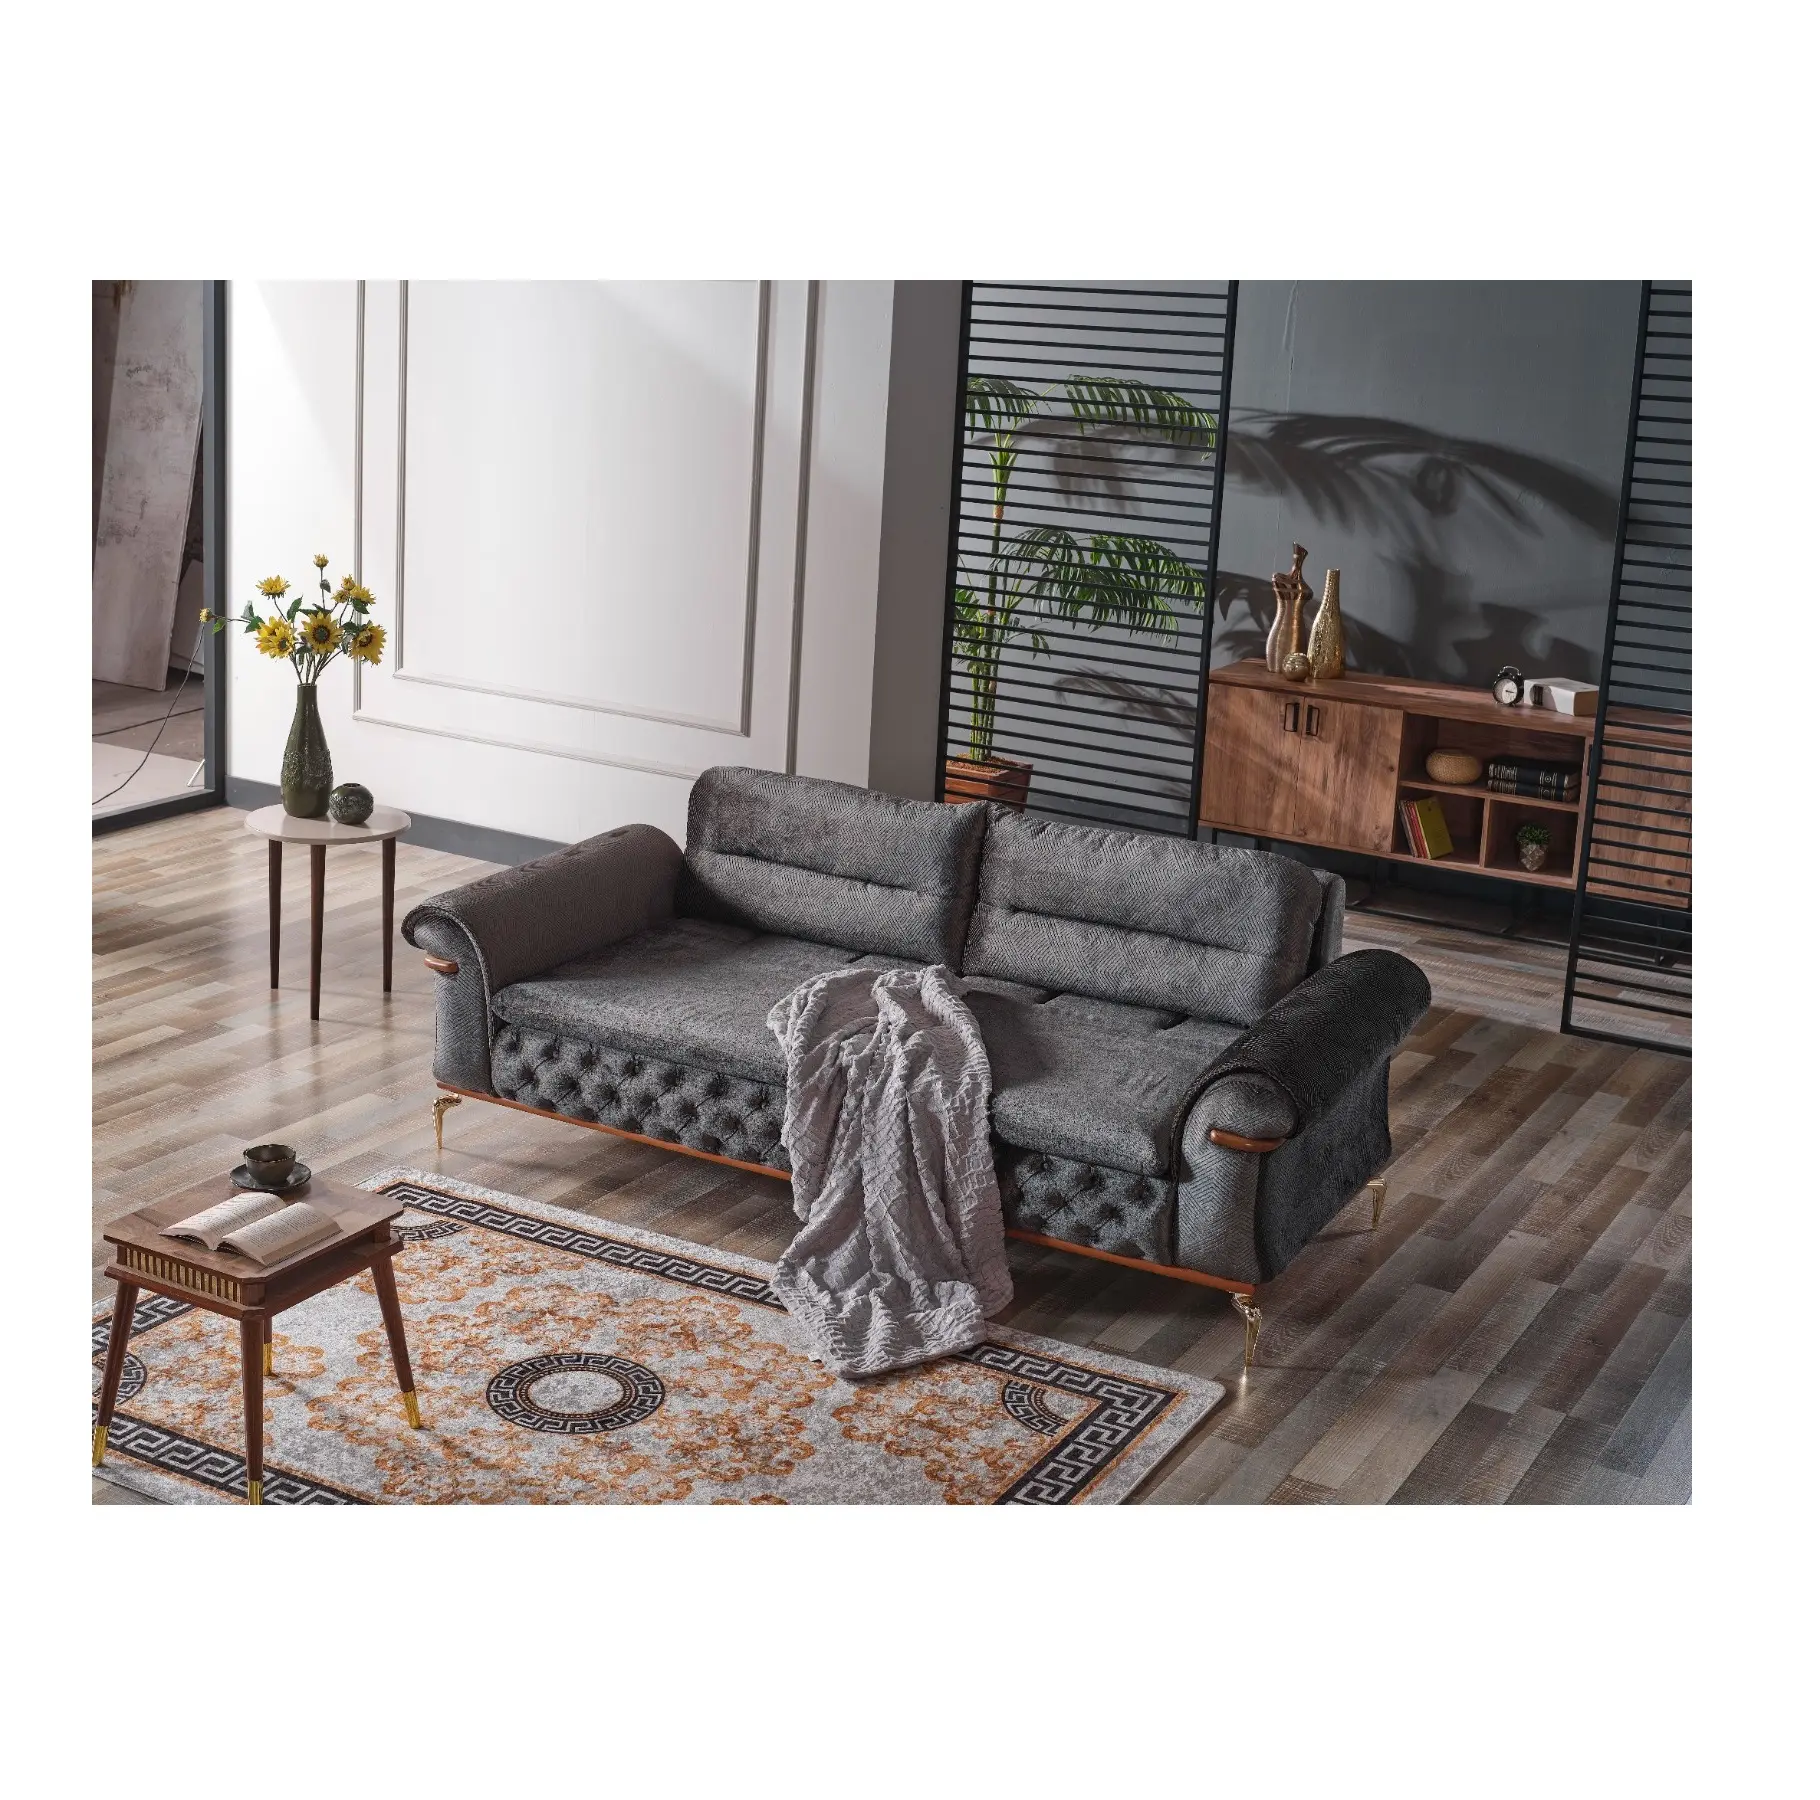 Htn Wohnzimmer Loves eat Stoff Leder Zweisitzer Sofa Made in Turkey Kreativer Designer Nordic Single Chair Hotel Modellierung